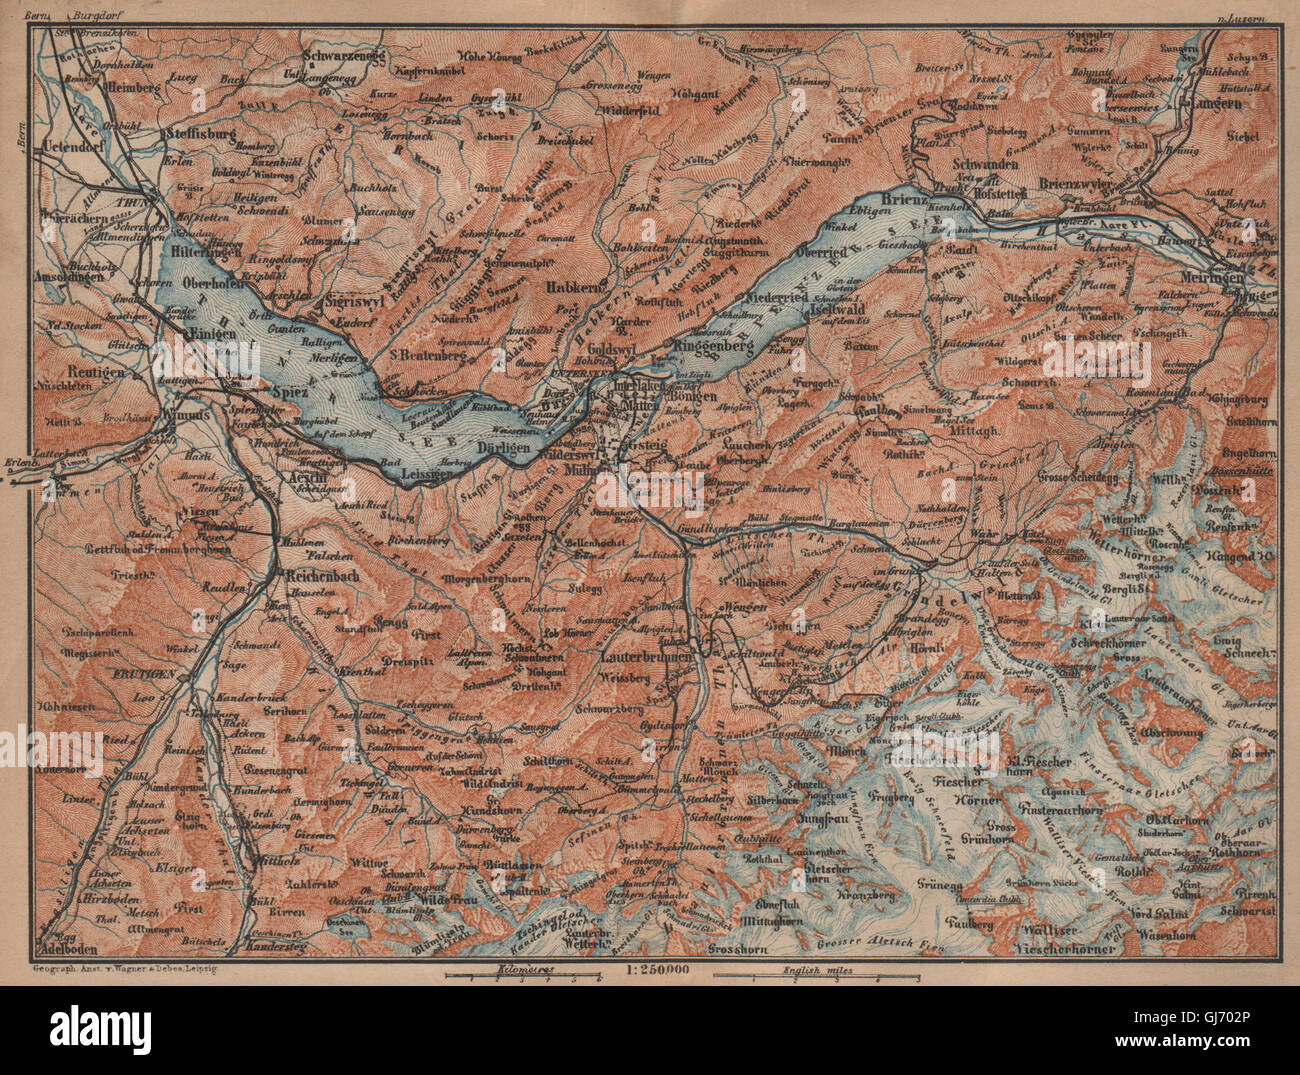 BERNESE OBERLAND. Wengen Mürren Grundelwald Reutigen Interlaken Eiger, 1909 map Stock Photo